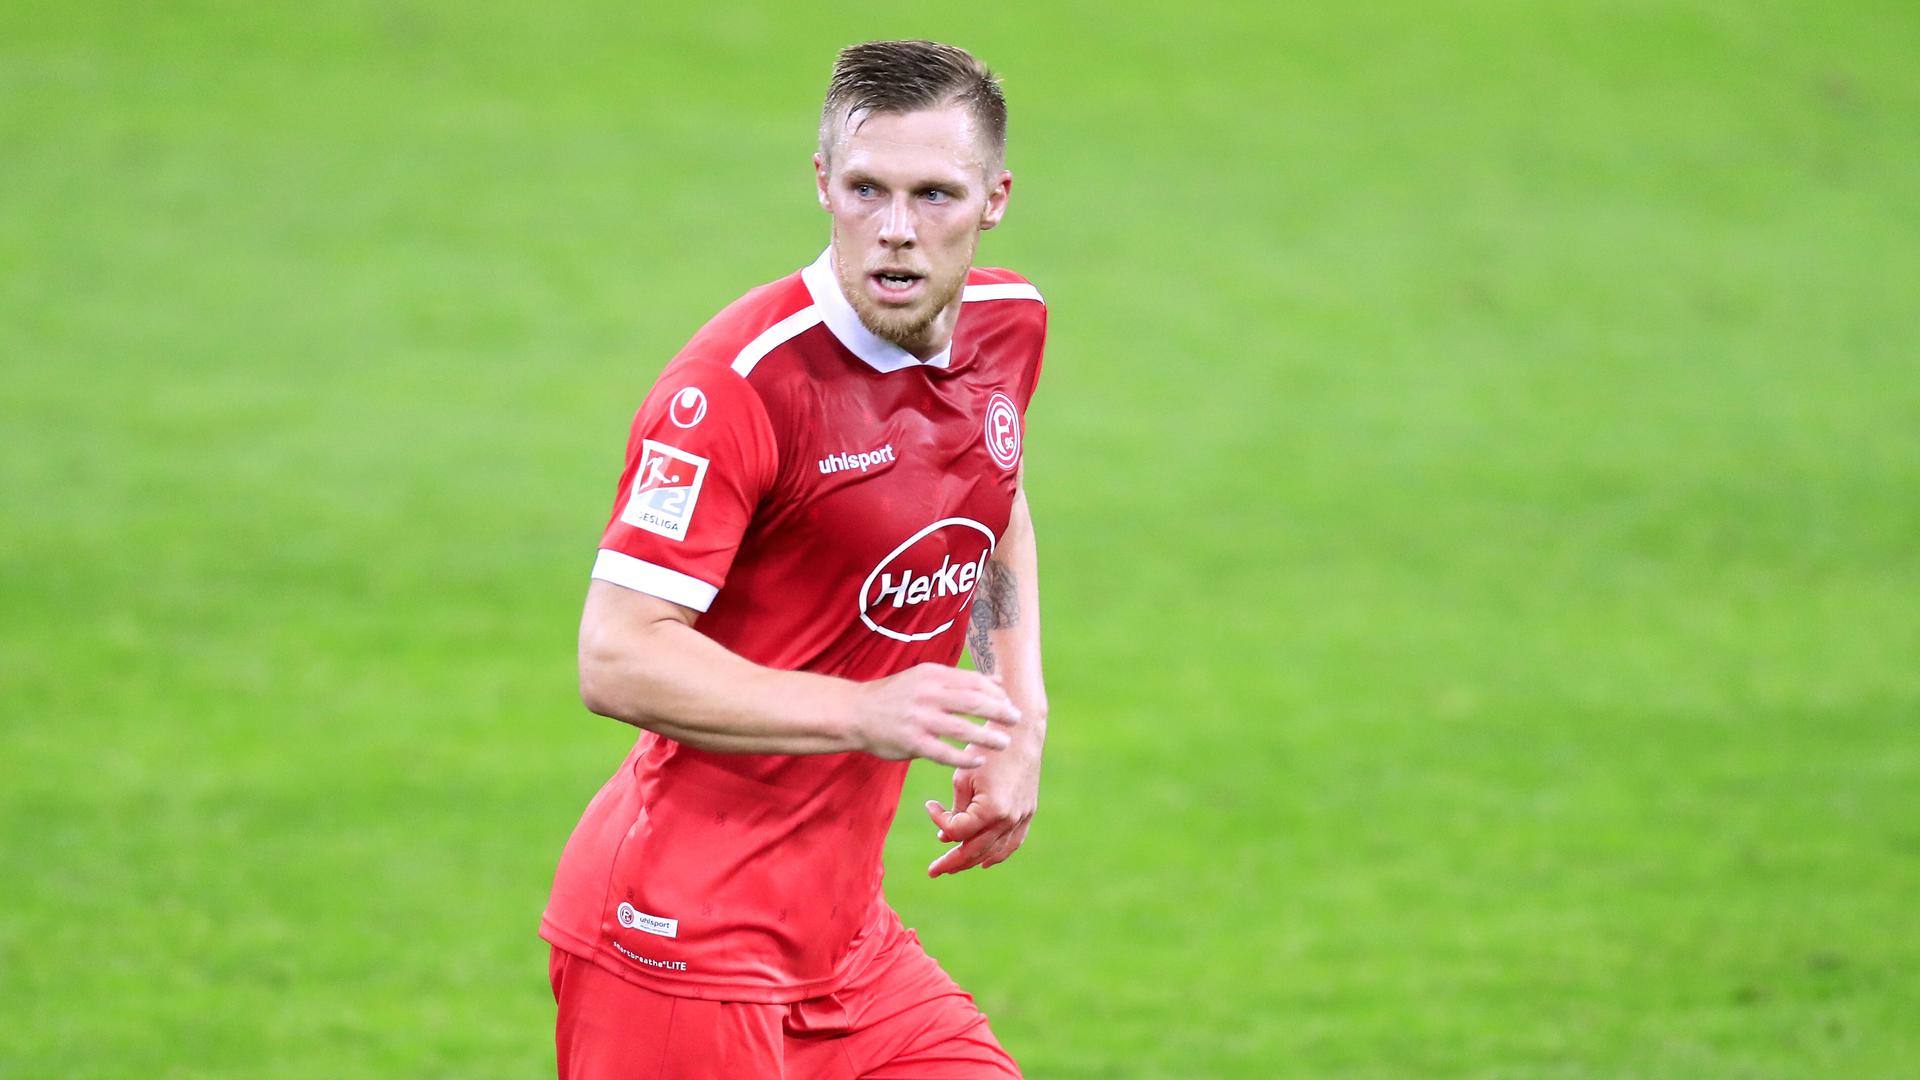 Immer auf der Lauer: Düsseldorfs Stürmer Rouwen Hennings ist auch mit 33 für jede Zweitliga-Abwehrreihe en unangenehmer Gegner. 